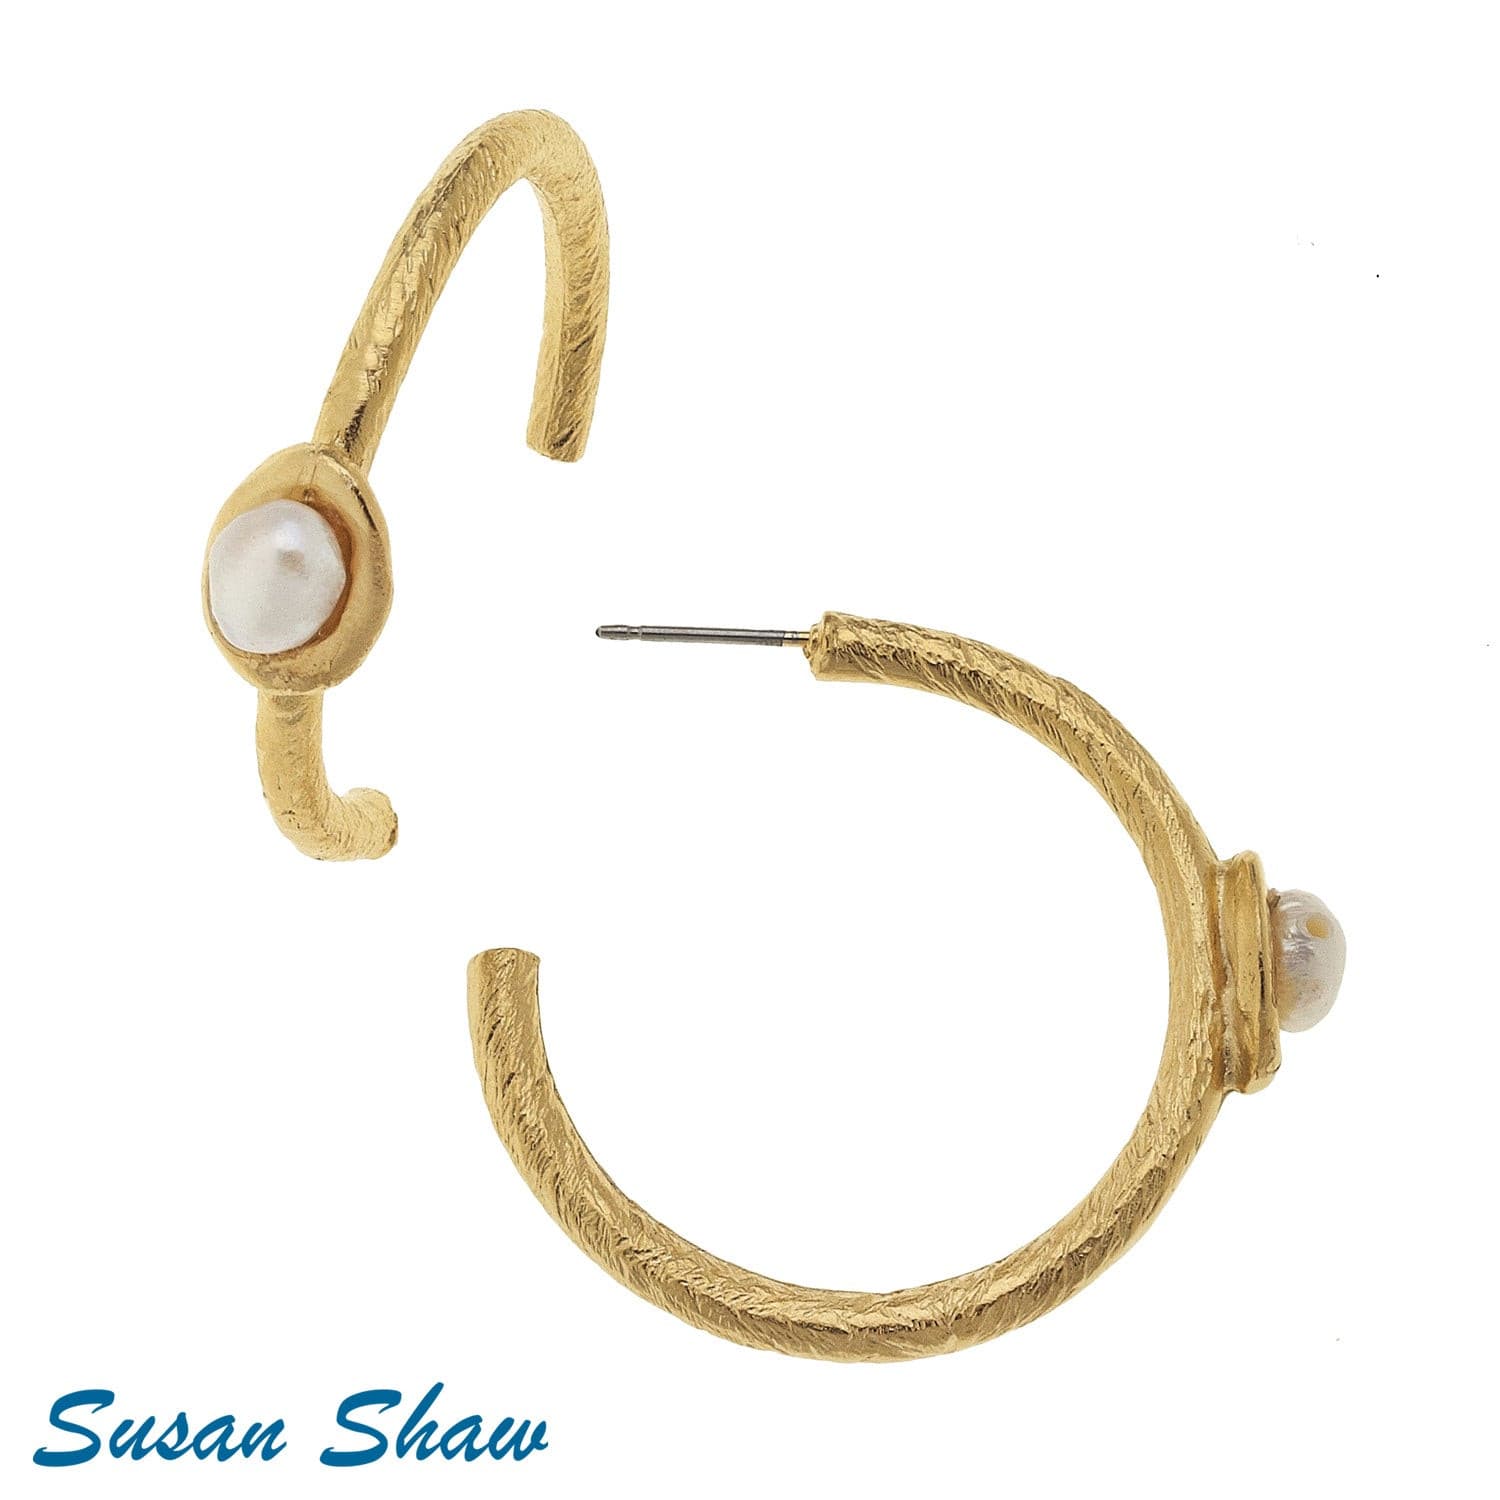 Susan Shaw Pearl Hoop Earrings.